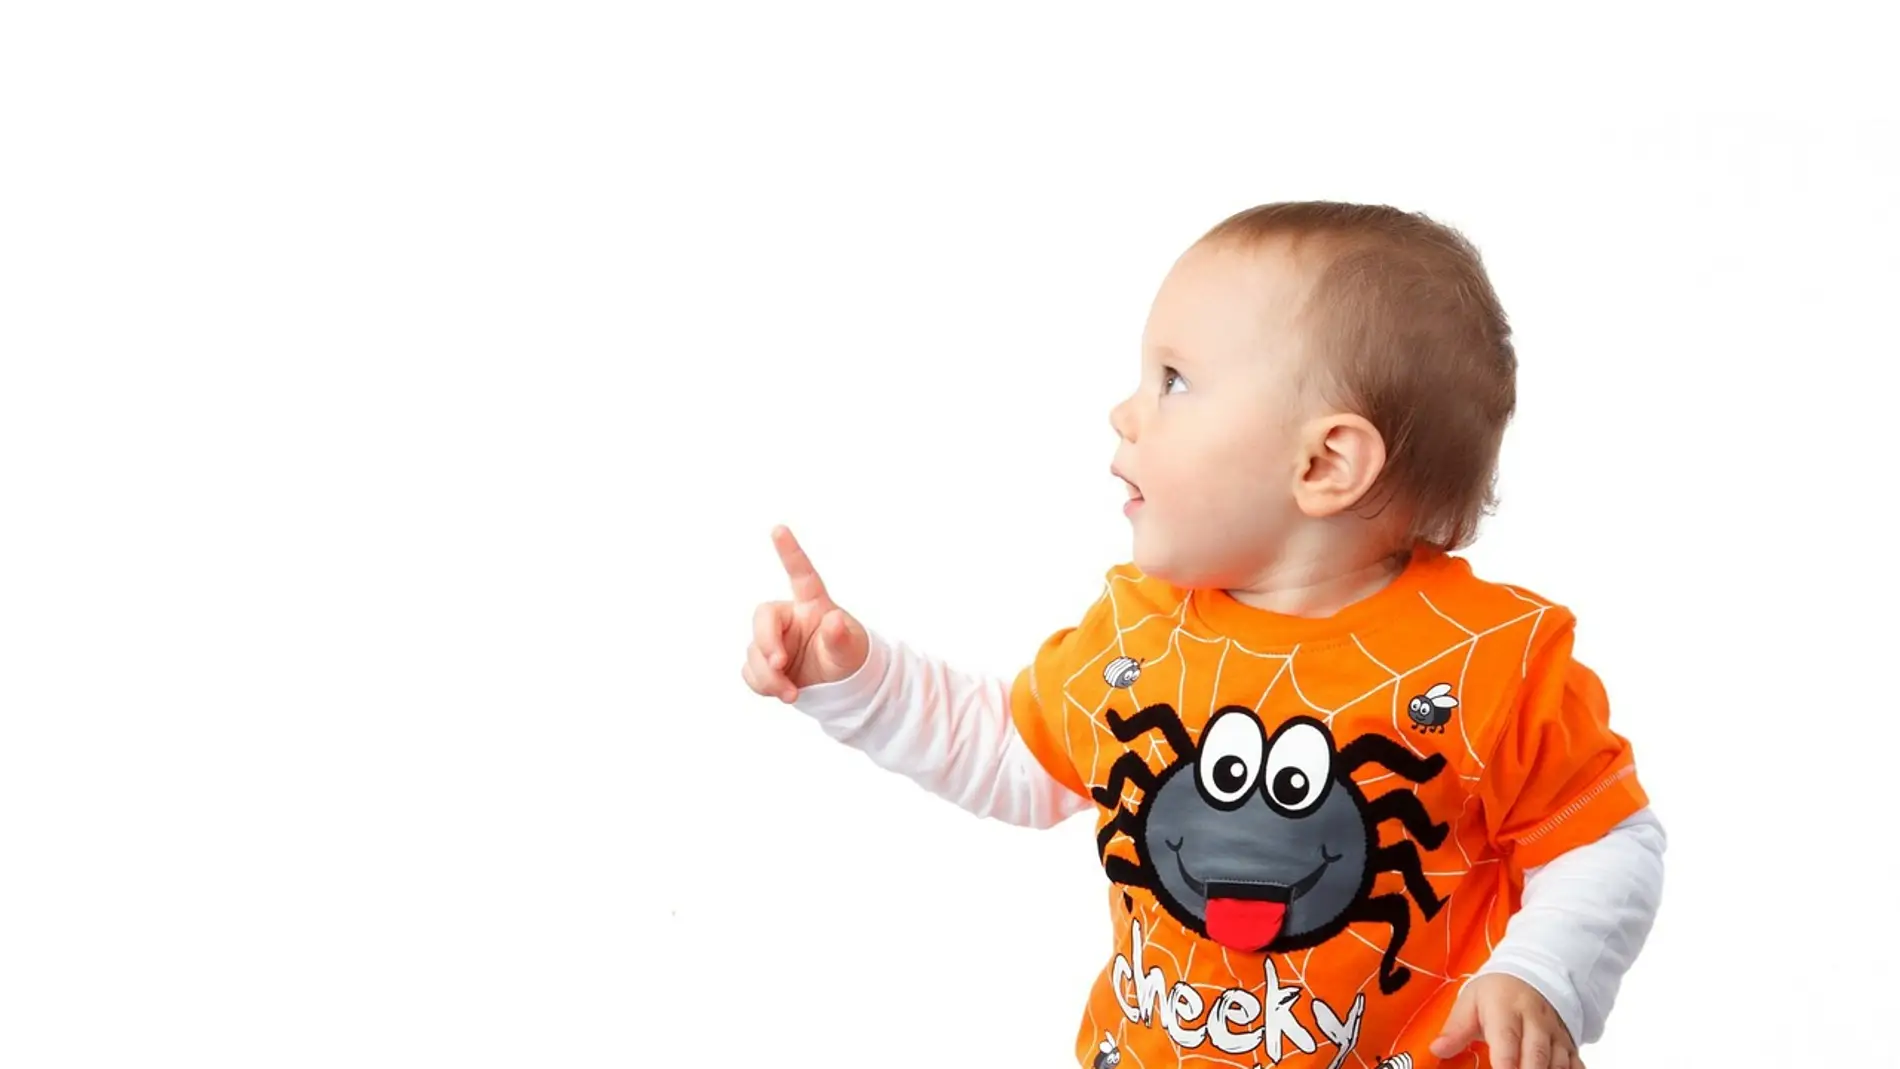 Fotografía de un bebe señalando con el dedo